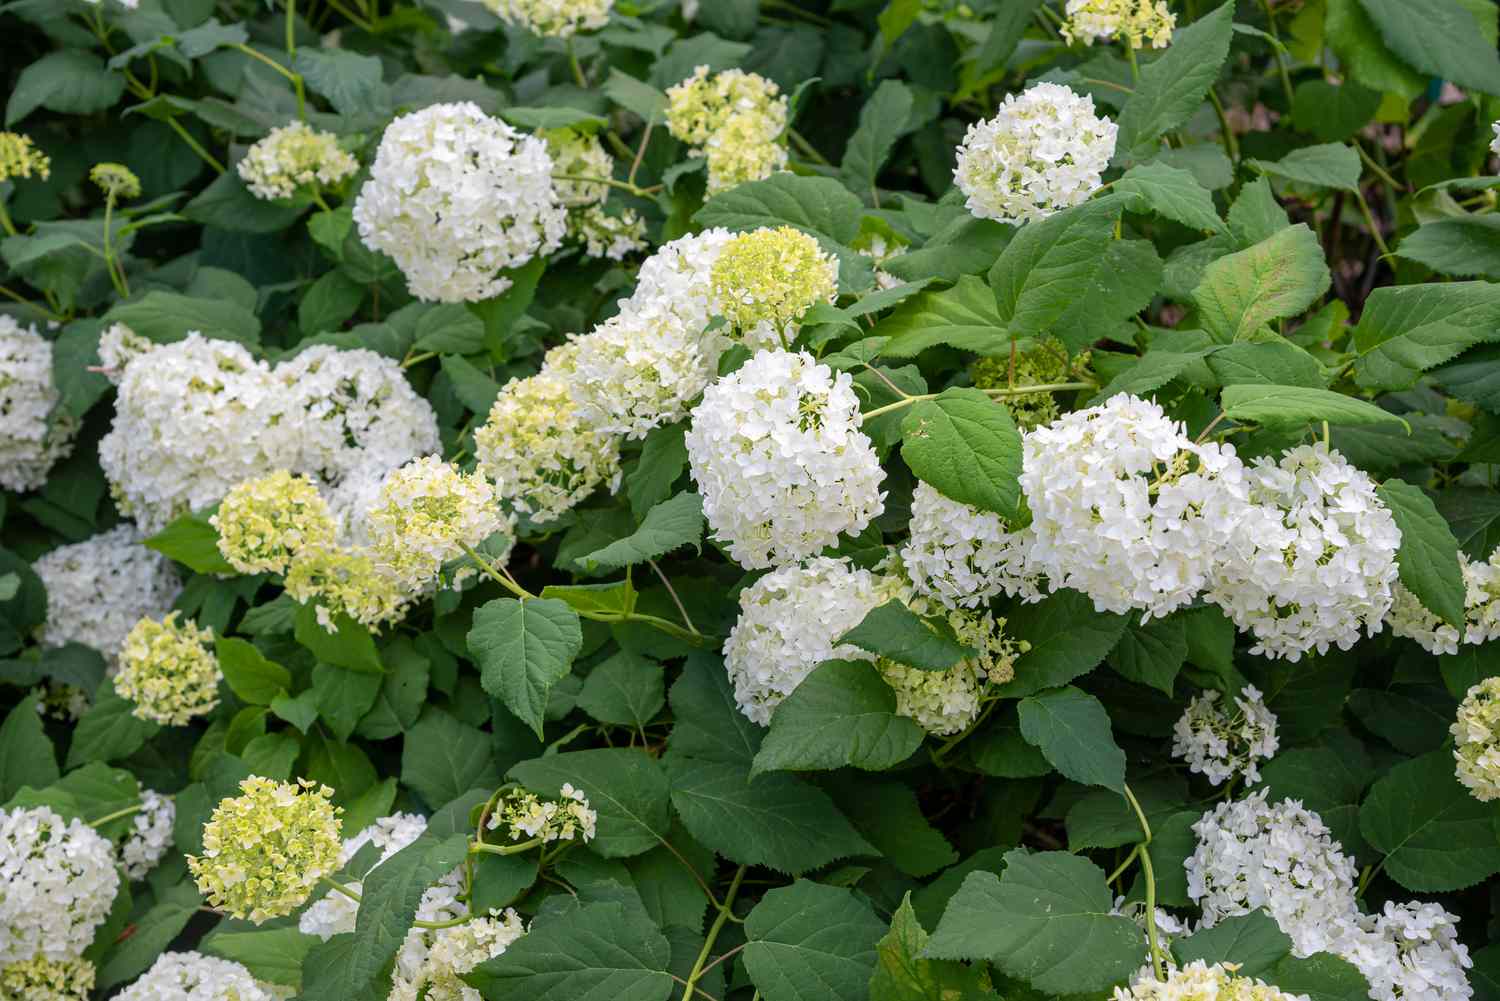 Glatter Hortensienstrauch mit weißen und hellgelben Blütenbüscheln